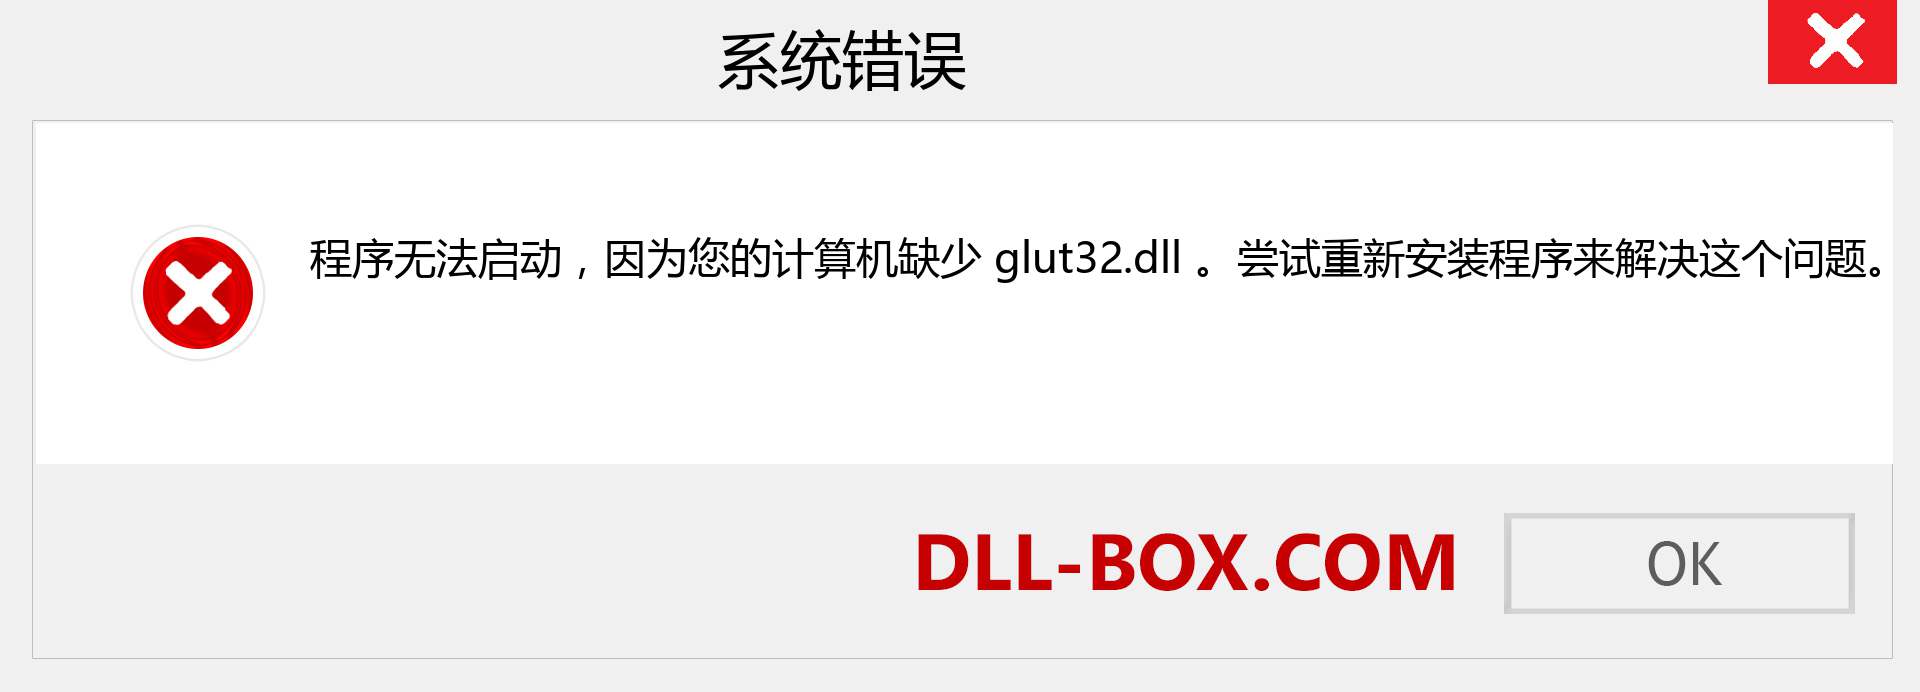 glut32.dll 文件丢失？。 适用于 Windows 7、8、10 的下载 - 修复 Windows、照片、图像上的 glut32 dll 丢失错误